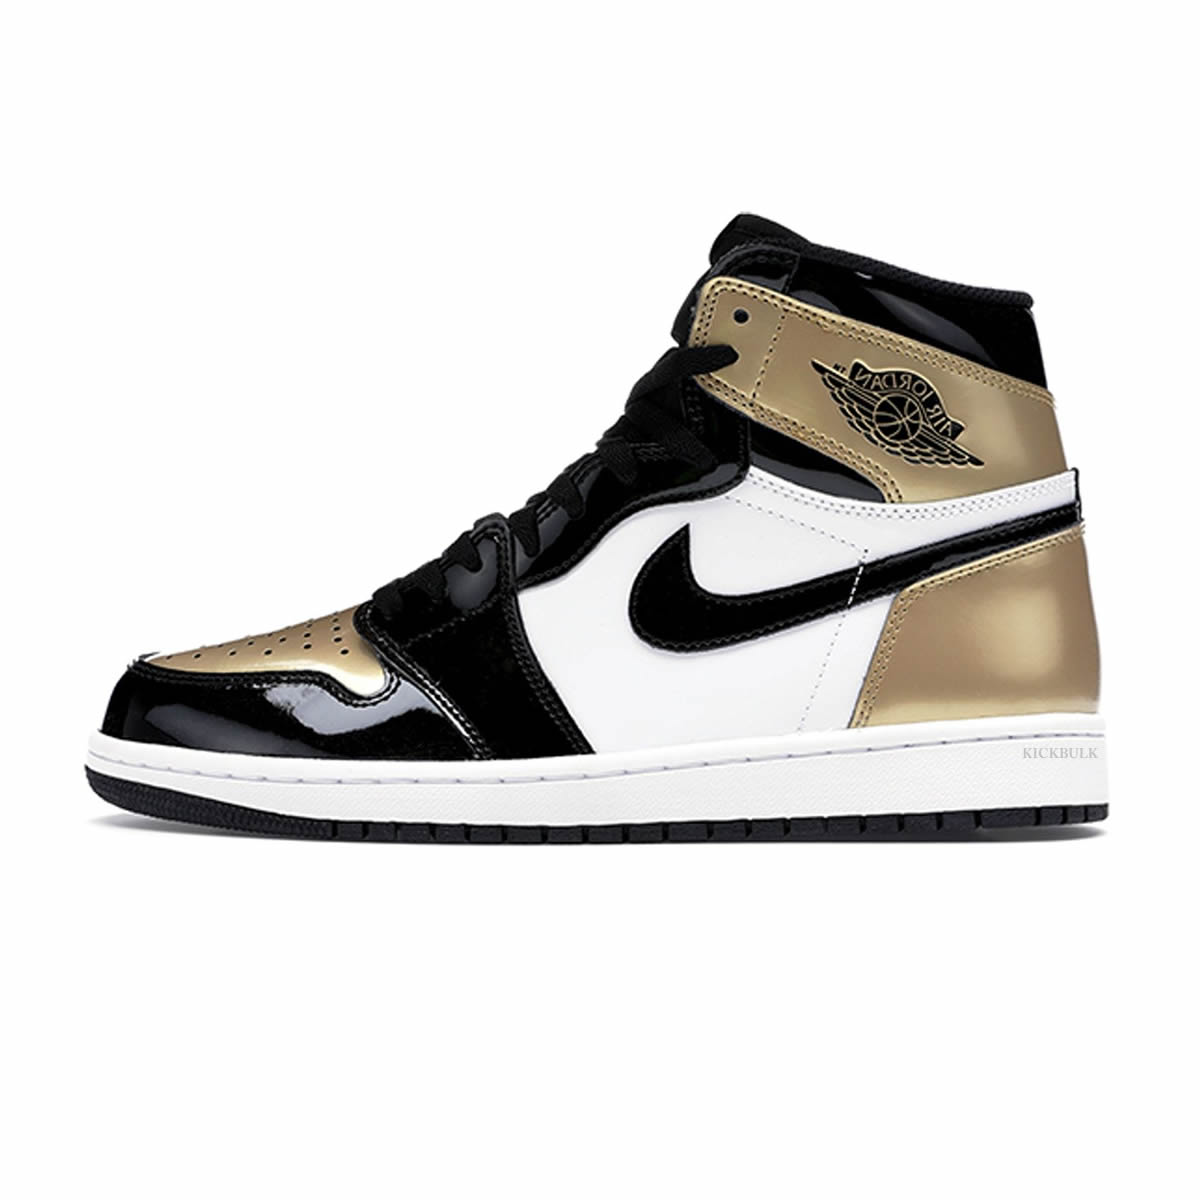 Nike Air Jordan 1 Retro High Og Gold Toe 861428 007 0 - www.kickbulk.co